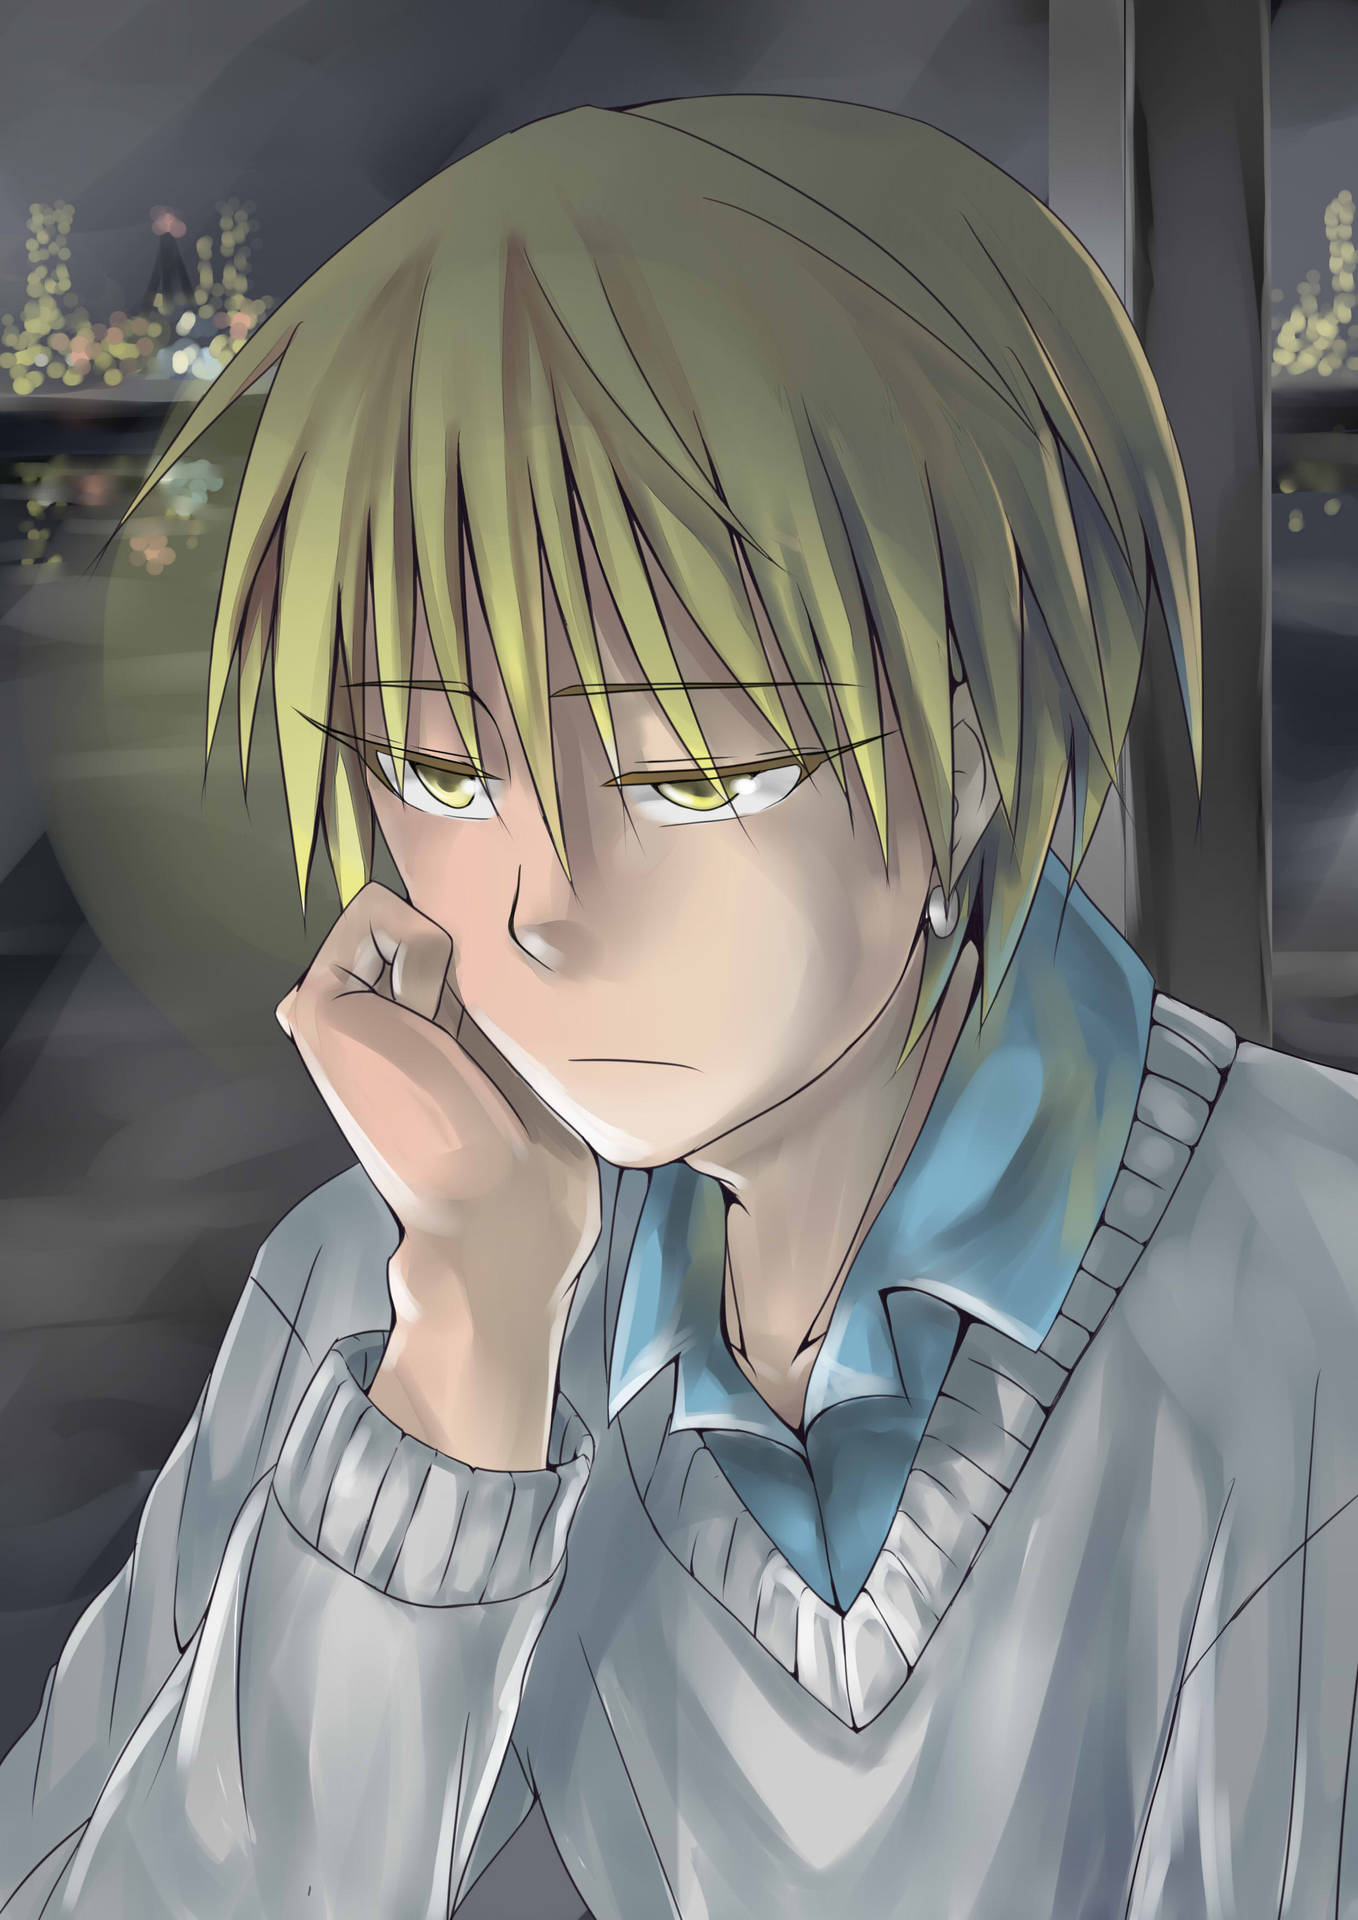 Sad Anime Boy Kise Ryota Background